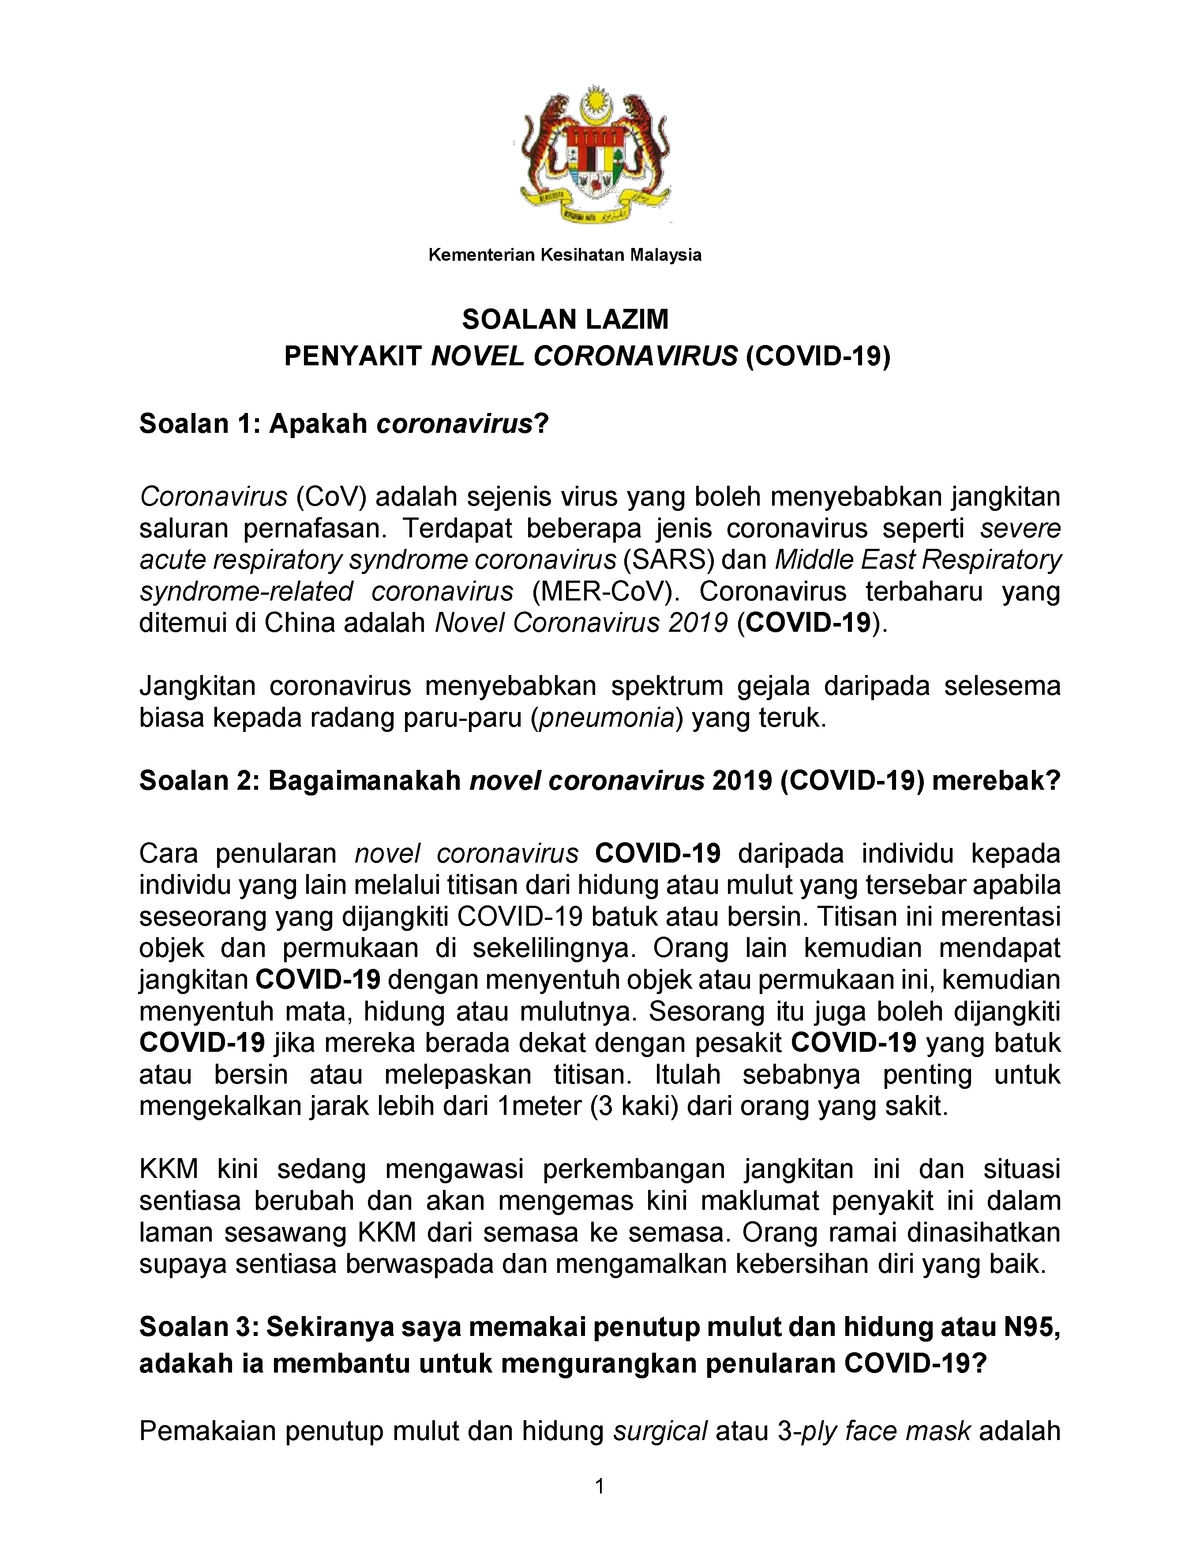 Soalan Lazim Covid 19 Kementerian Kesihatan Malaysia Soalan Lazim Penyakit Novel Coronavirus Studocu